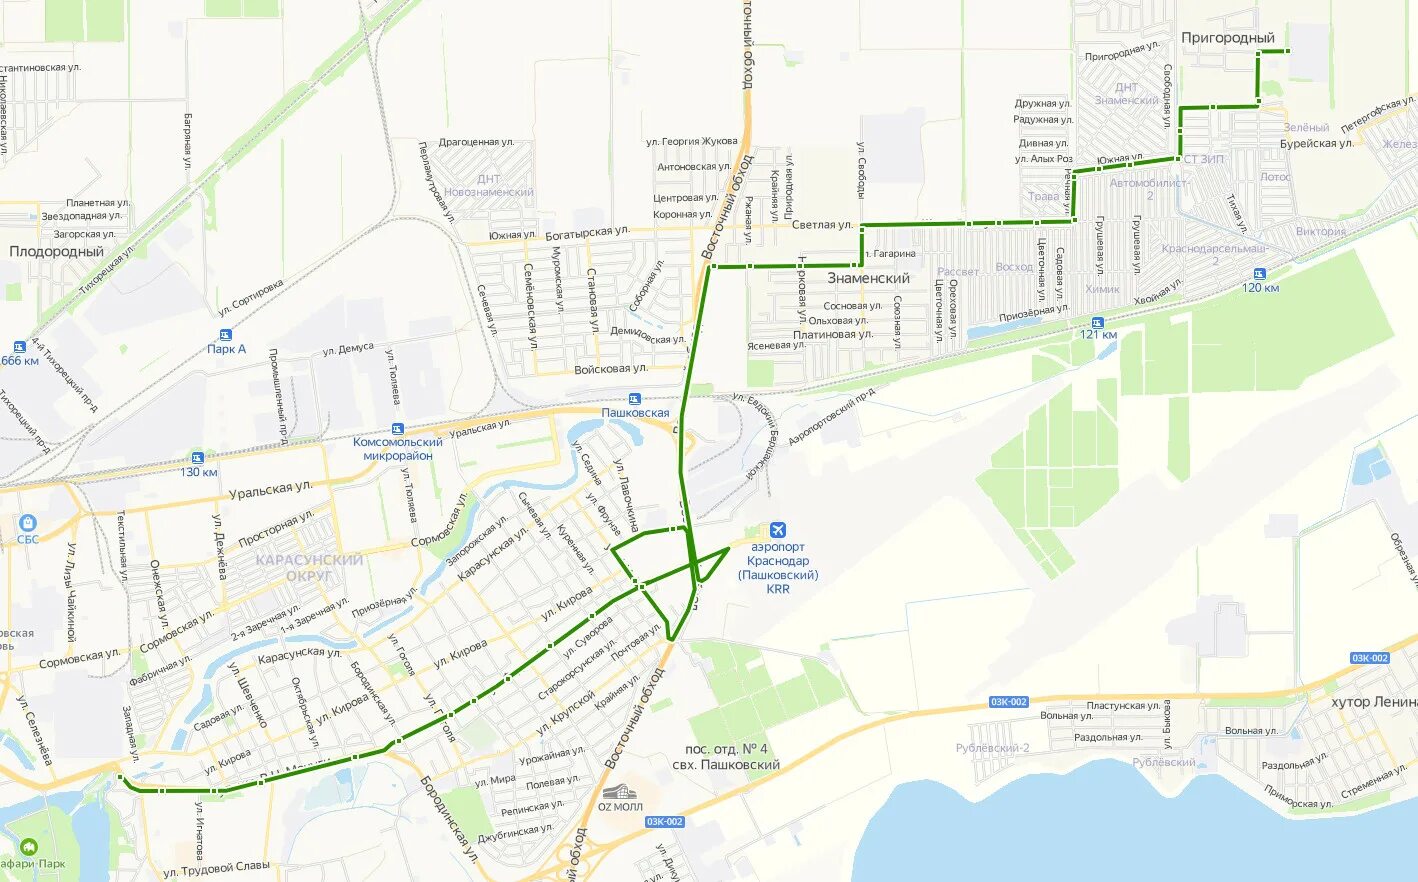 Краснодар автобус маршрутки Краснодар. Маршрут 59 маршрутки Краснодар. Карта схема Краснодара. Схема движения маршруток в Краснодаре.